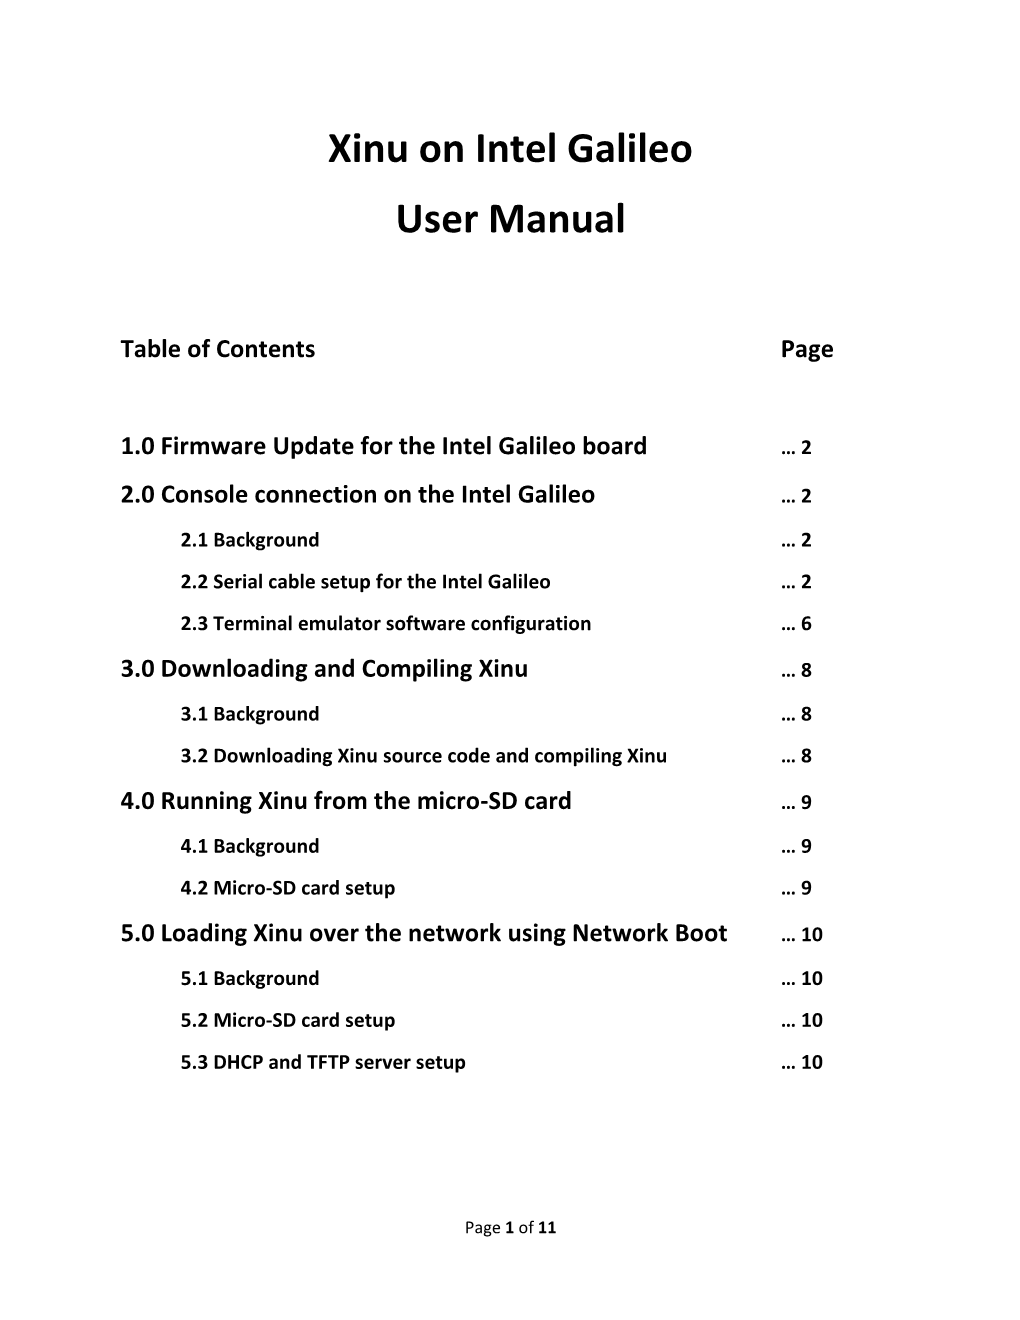 Xinu on Intel Galileo User Manual